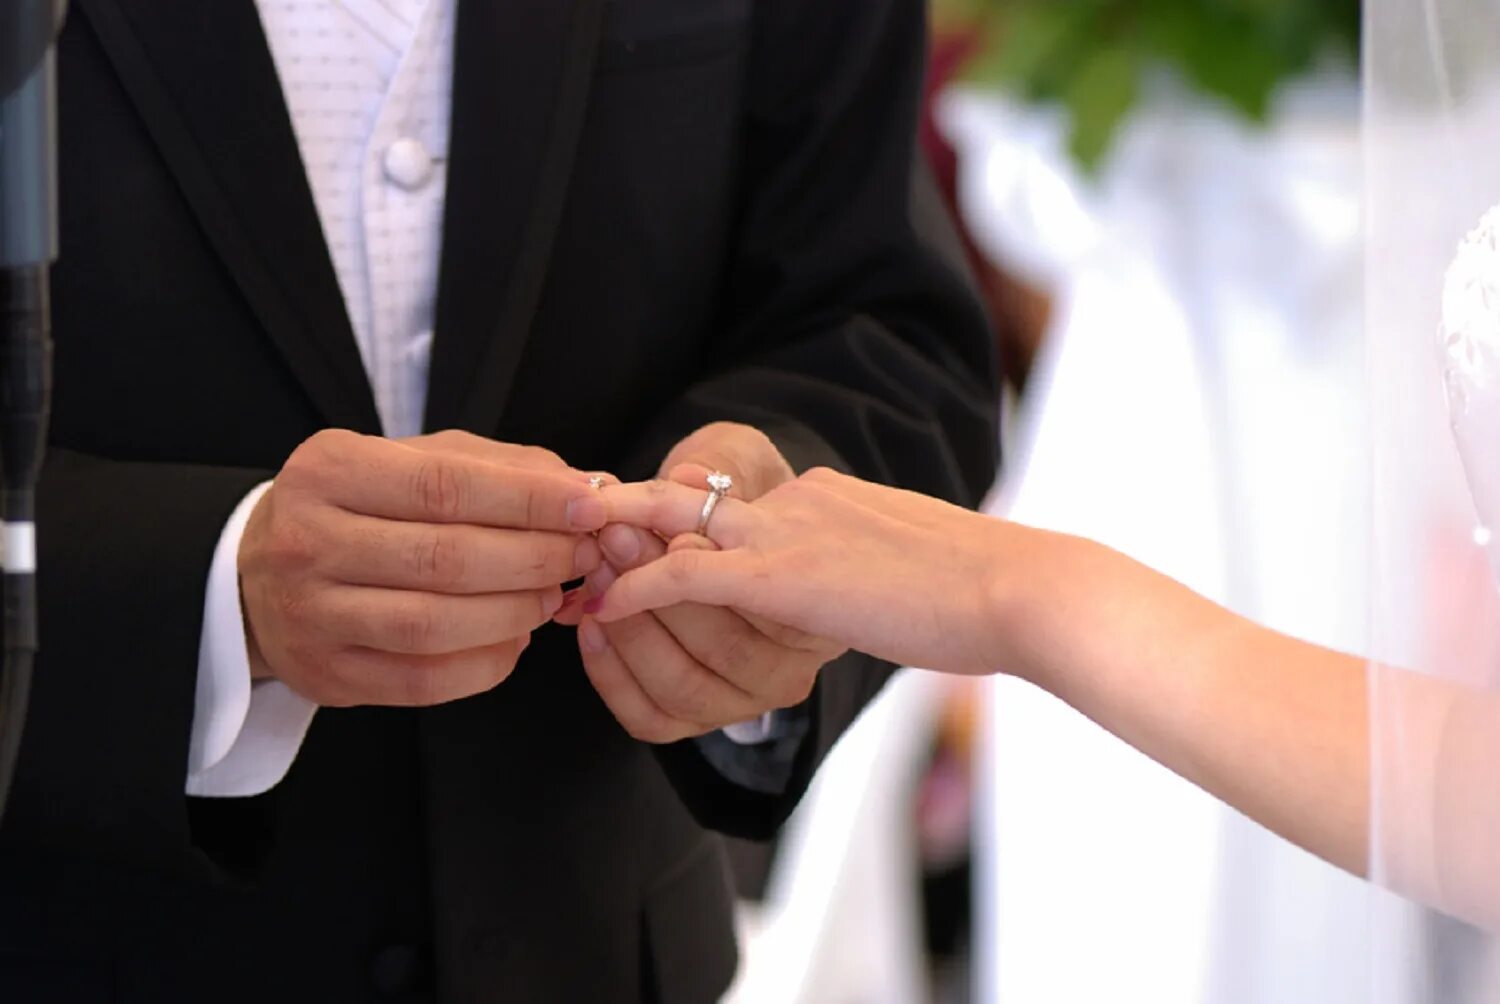 ЗАГС кольца. Вступающим в брак. Брак свадьба. Свадьба надевают кольца.